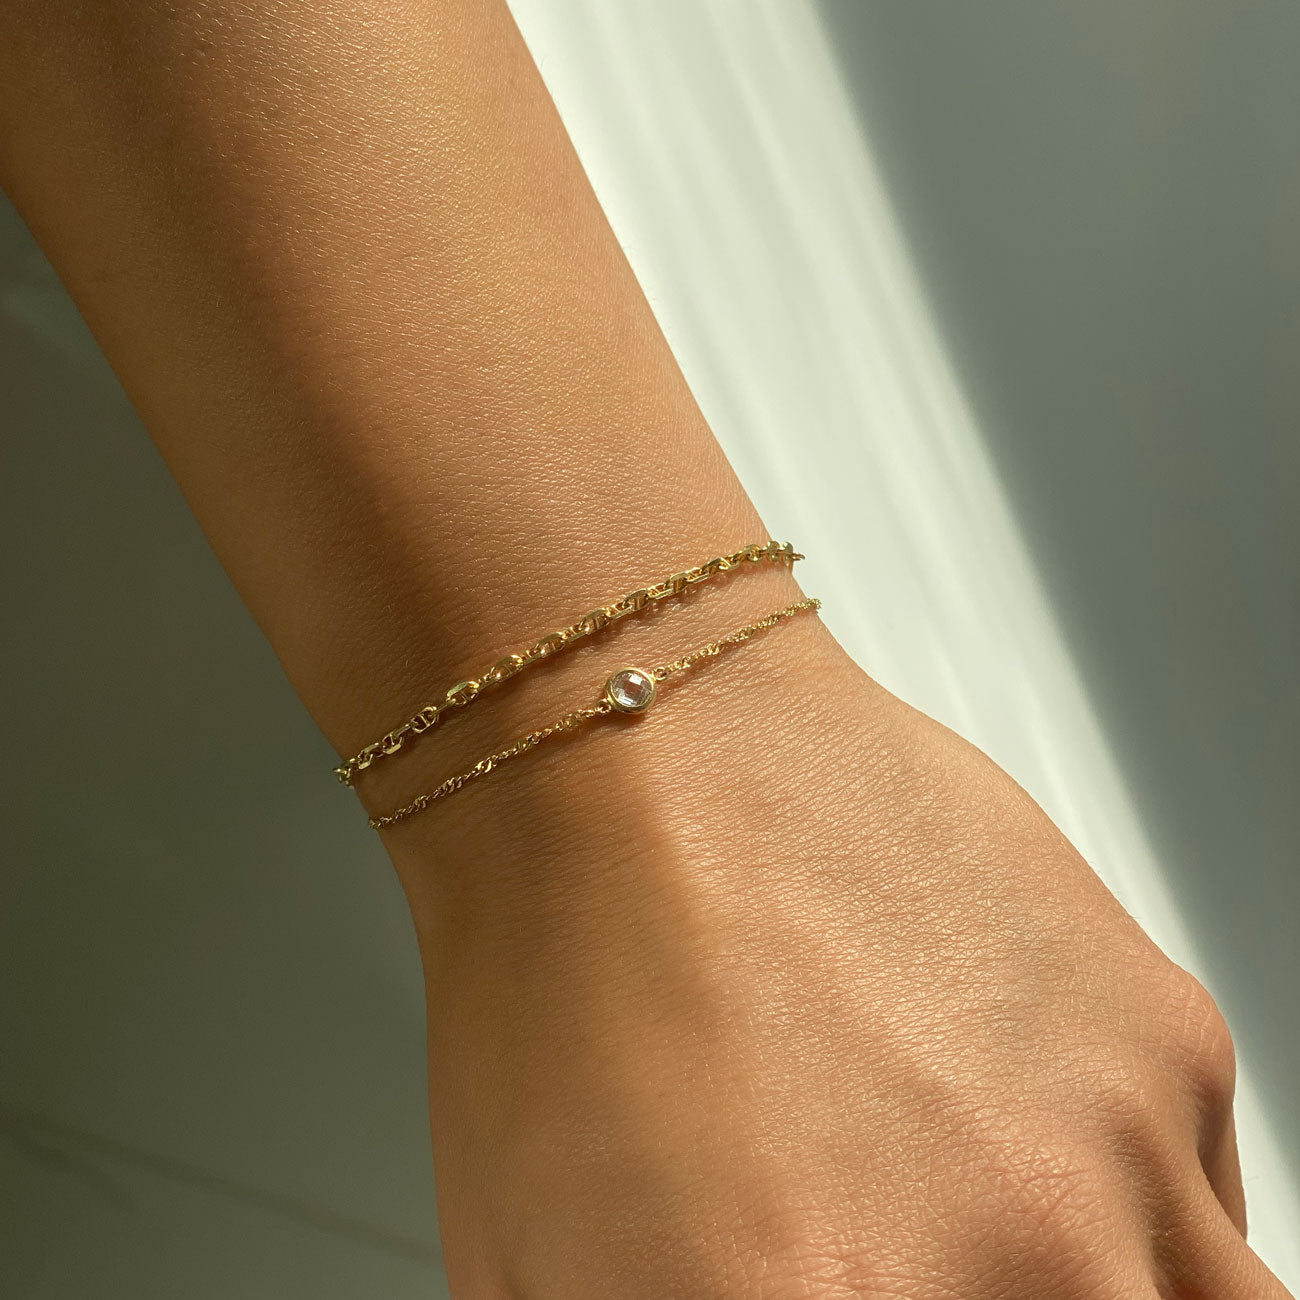 Wholesale Fashion Jewelry Bracelets Gold Chunky Chain Punk Diamond